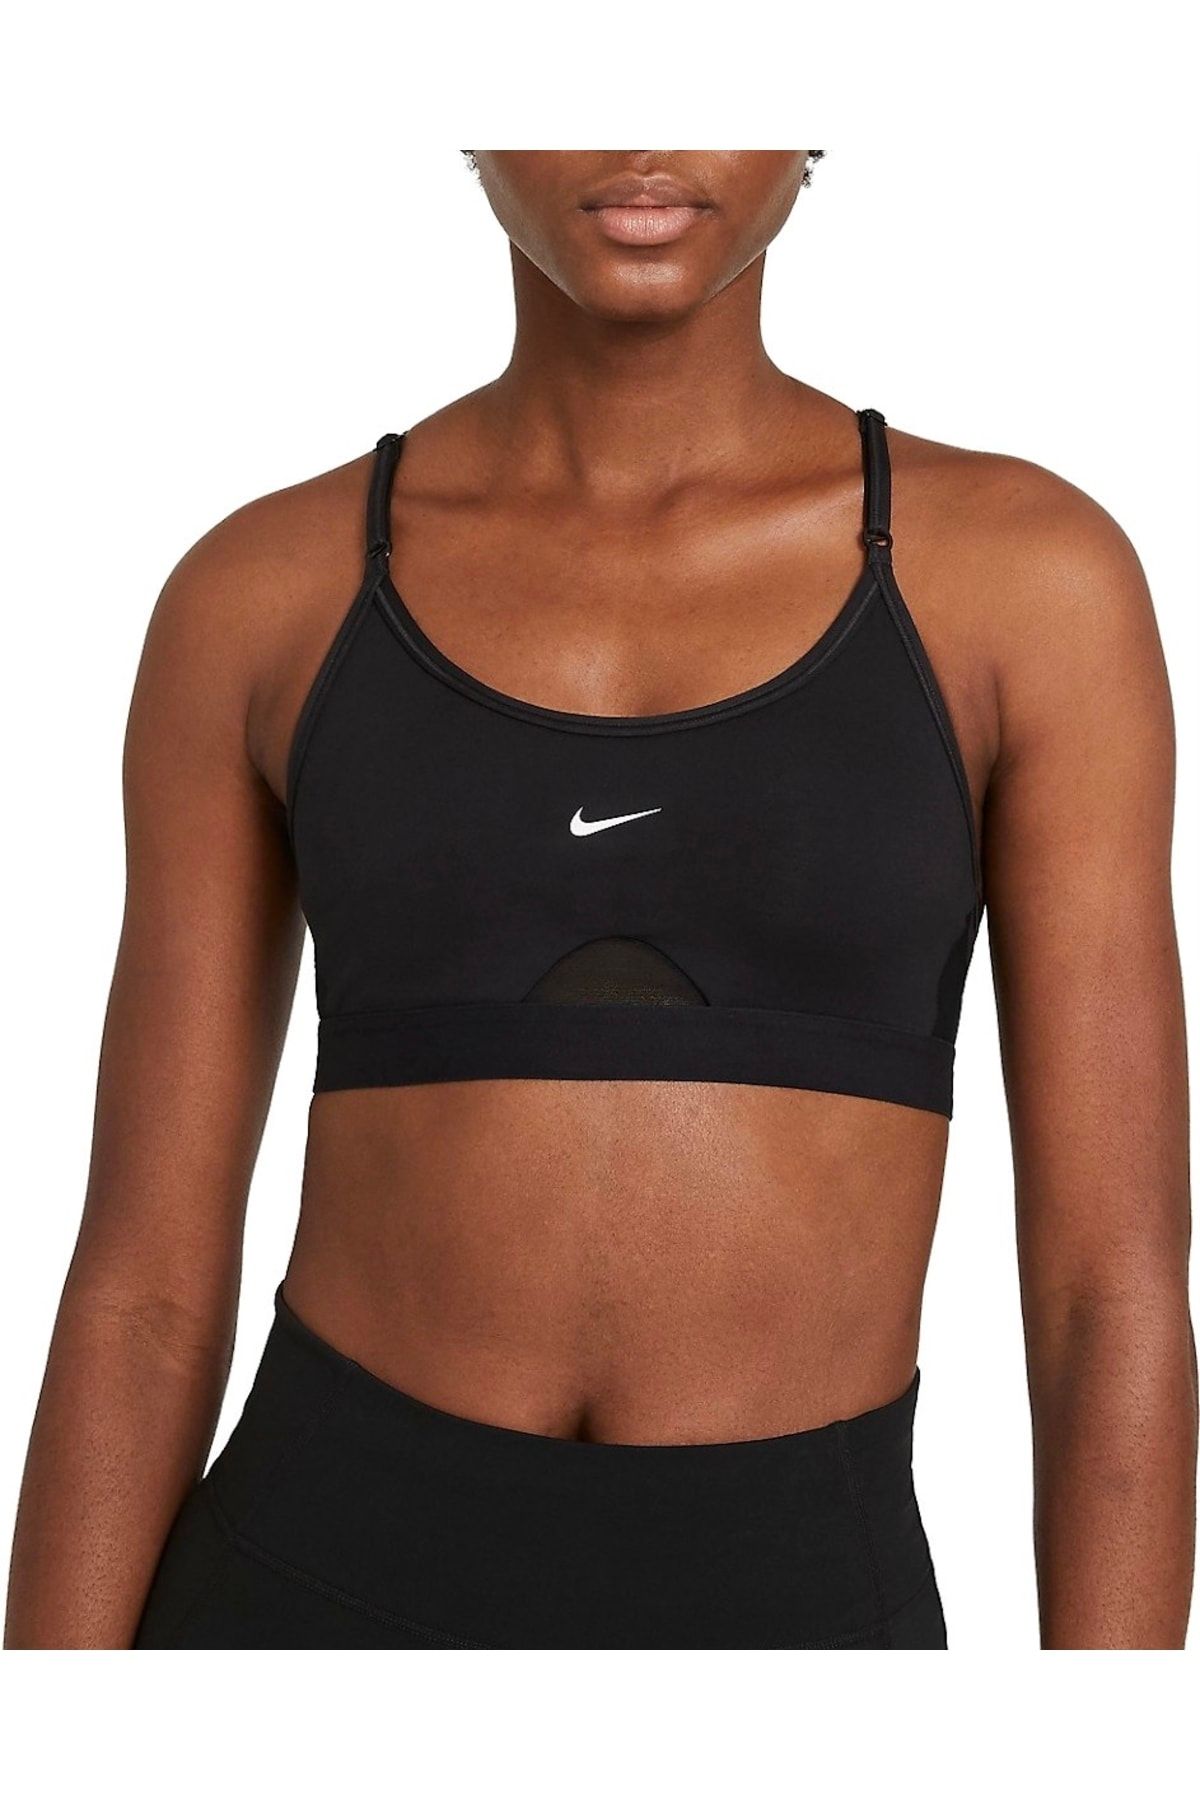 Nike Dri-fit Indy Women's Sports Bra Cz4462-010 - Trendyol